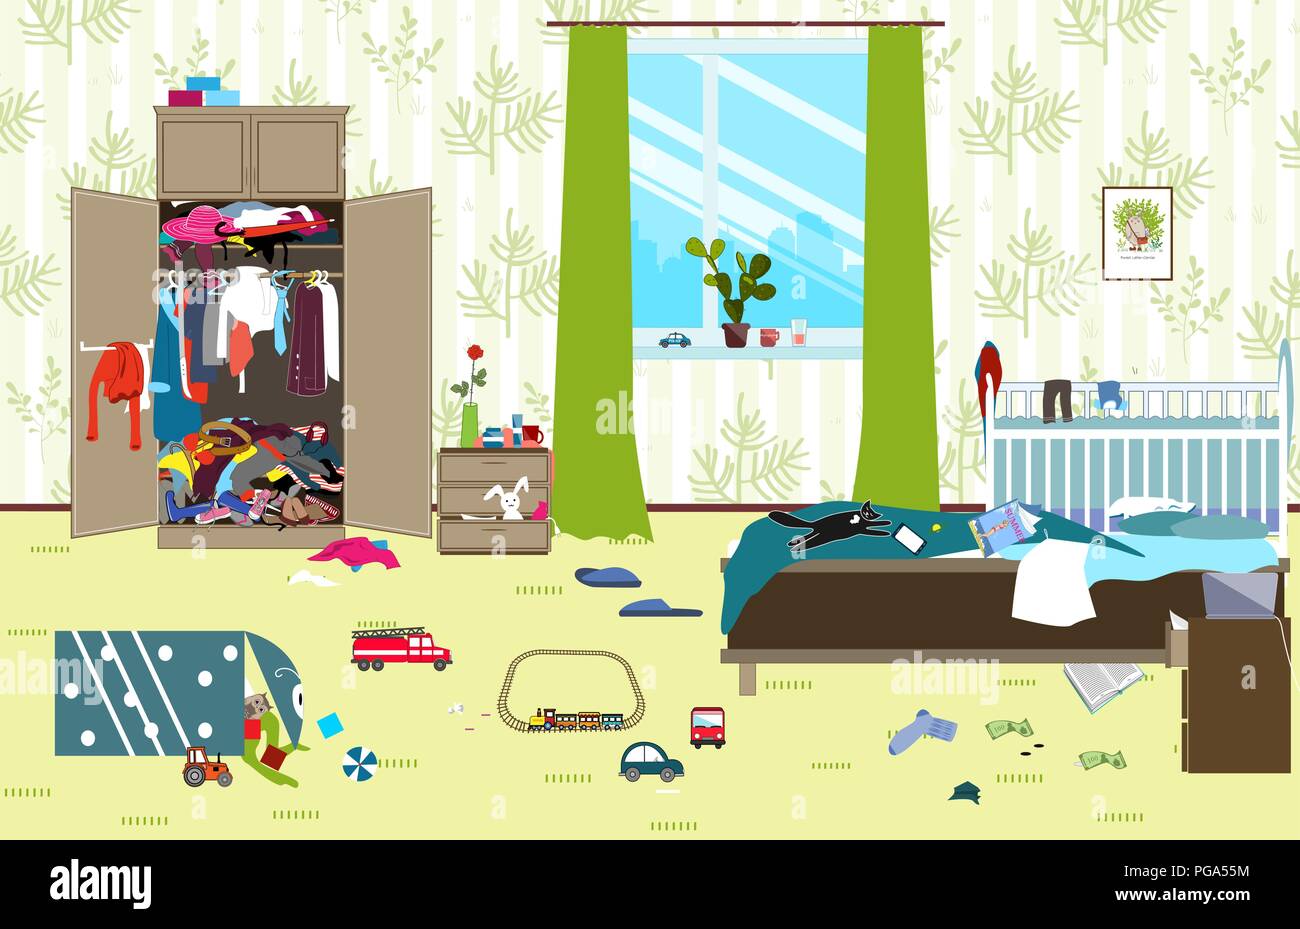 Unordentliches Zimmer, wo junge Familie mit Baby lebt. Unaufgeräumtes Zimmer. Cartoon Chaos im Zimmer. Nicht abgeholte Spielzeug, Dinge. Reinigung Vector Illustration. Stock Vektor